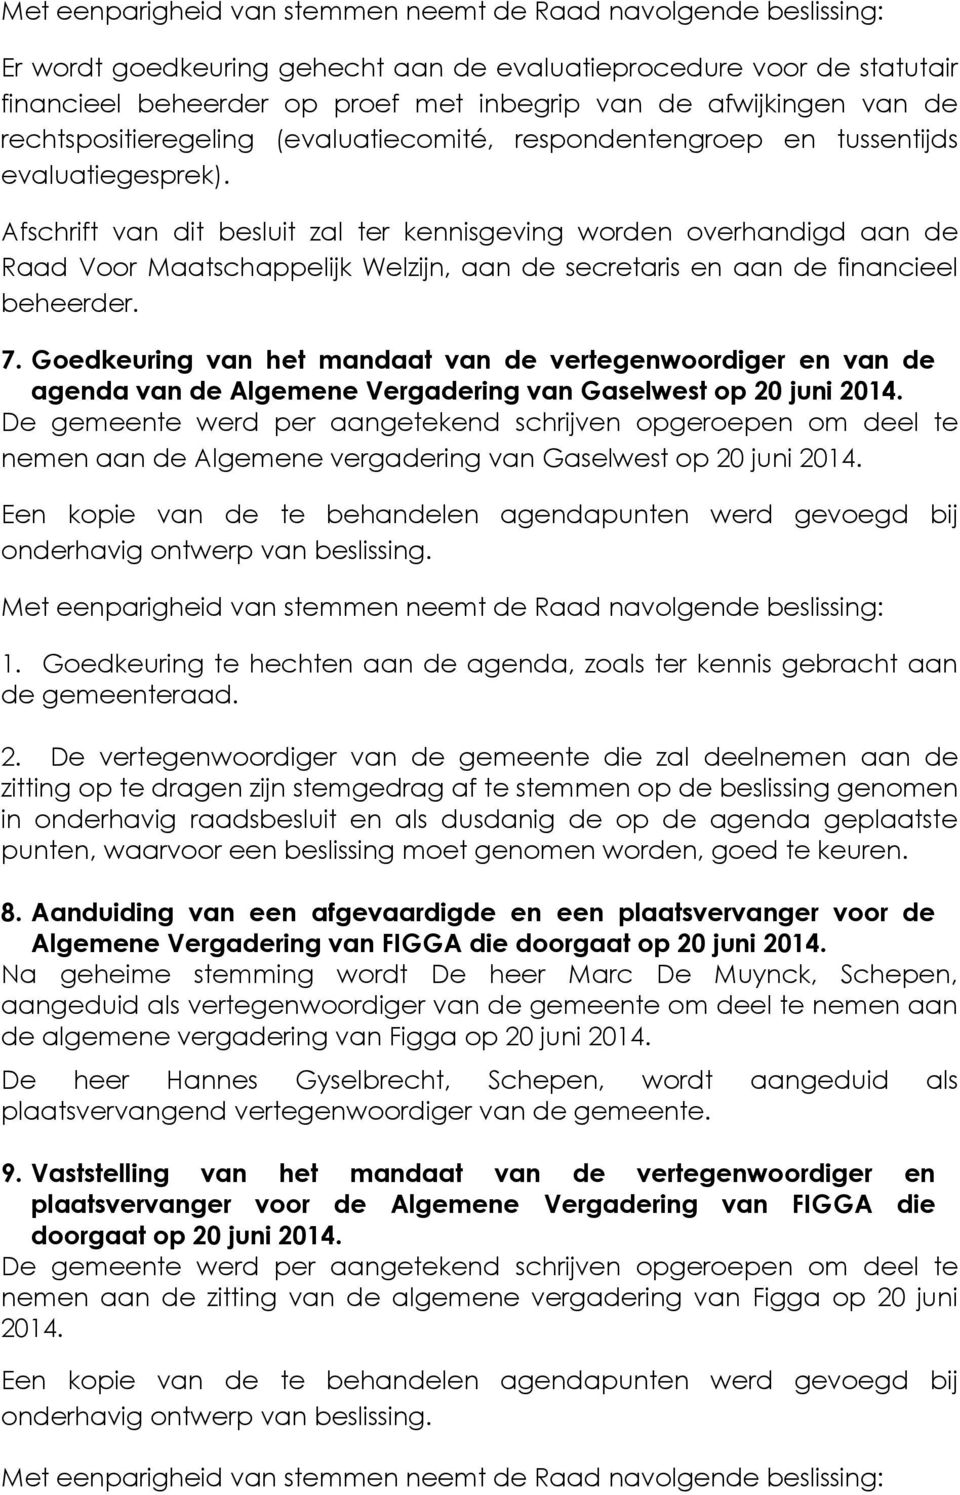 Goedkeuring van het mandaat van de vertegenwoordiger en van de agenda van de Algemene Vergadering van Gaselwest op 20 juni 2014.